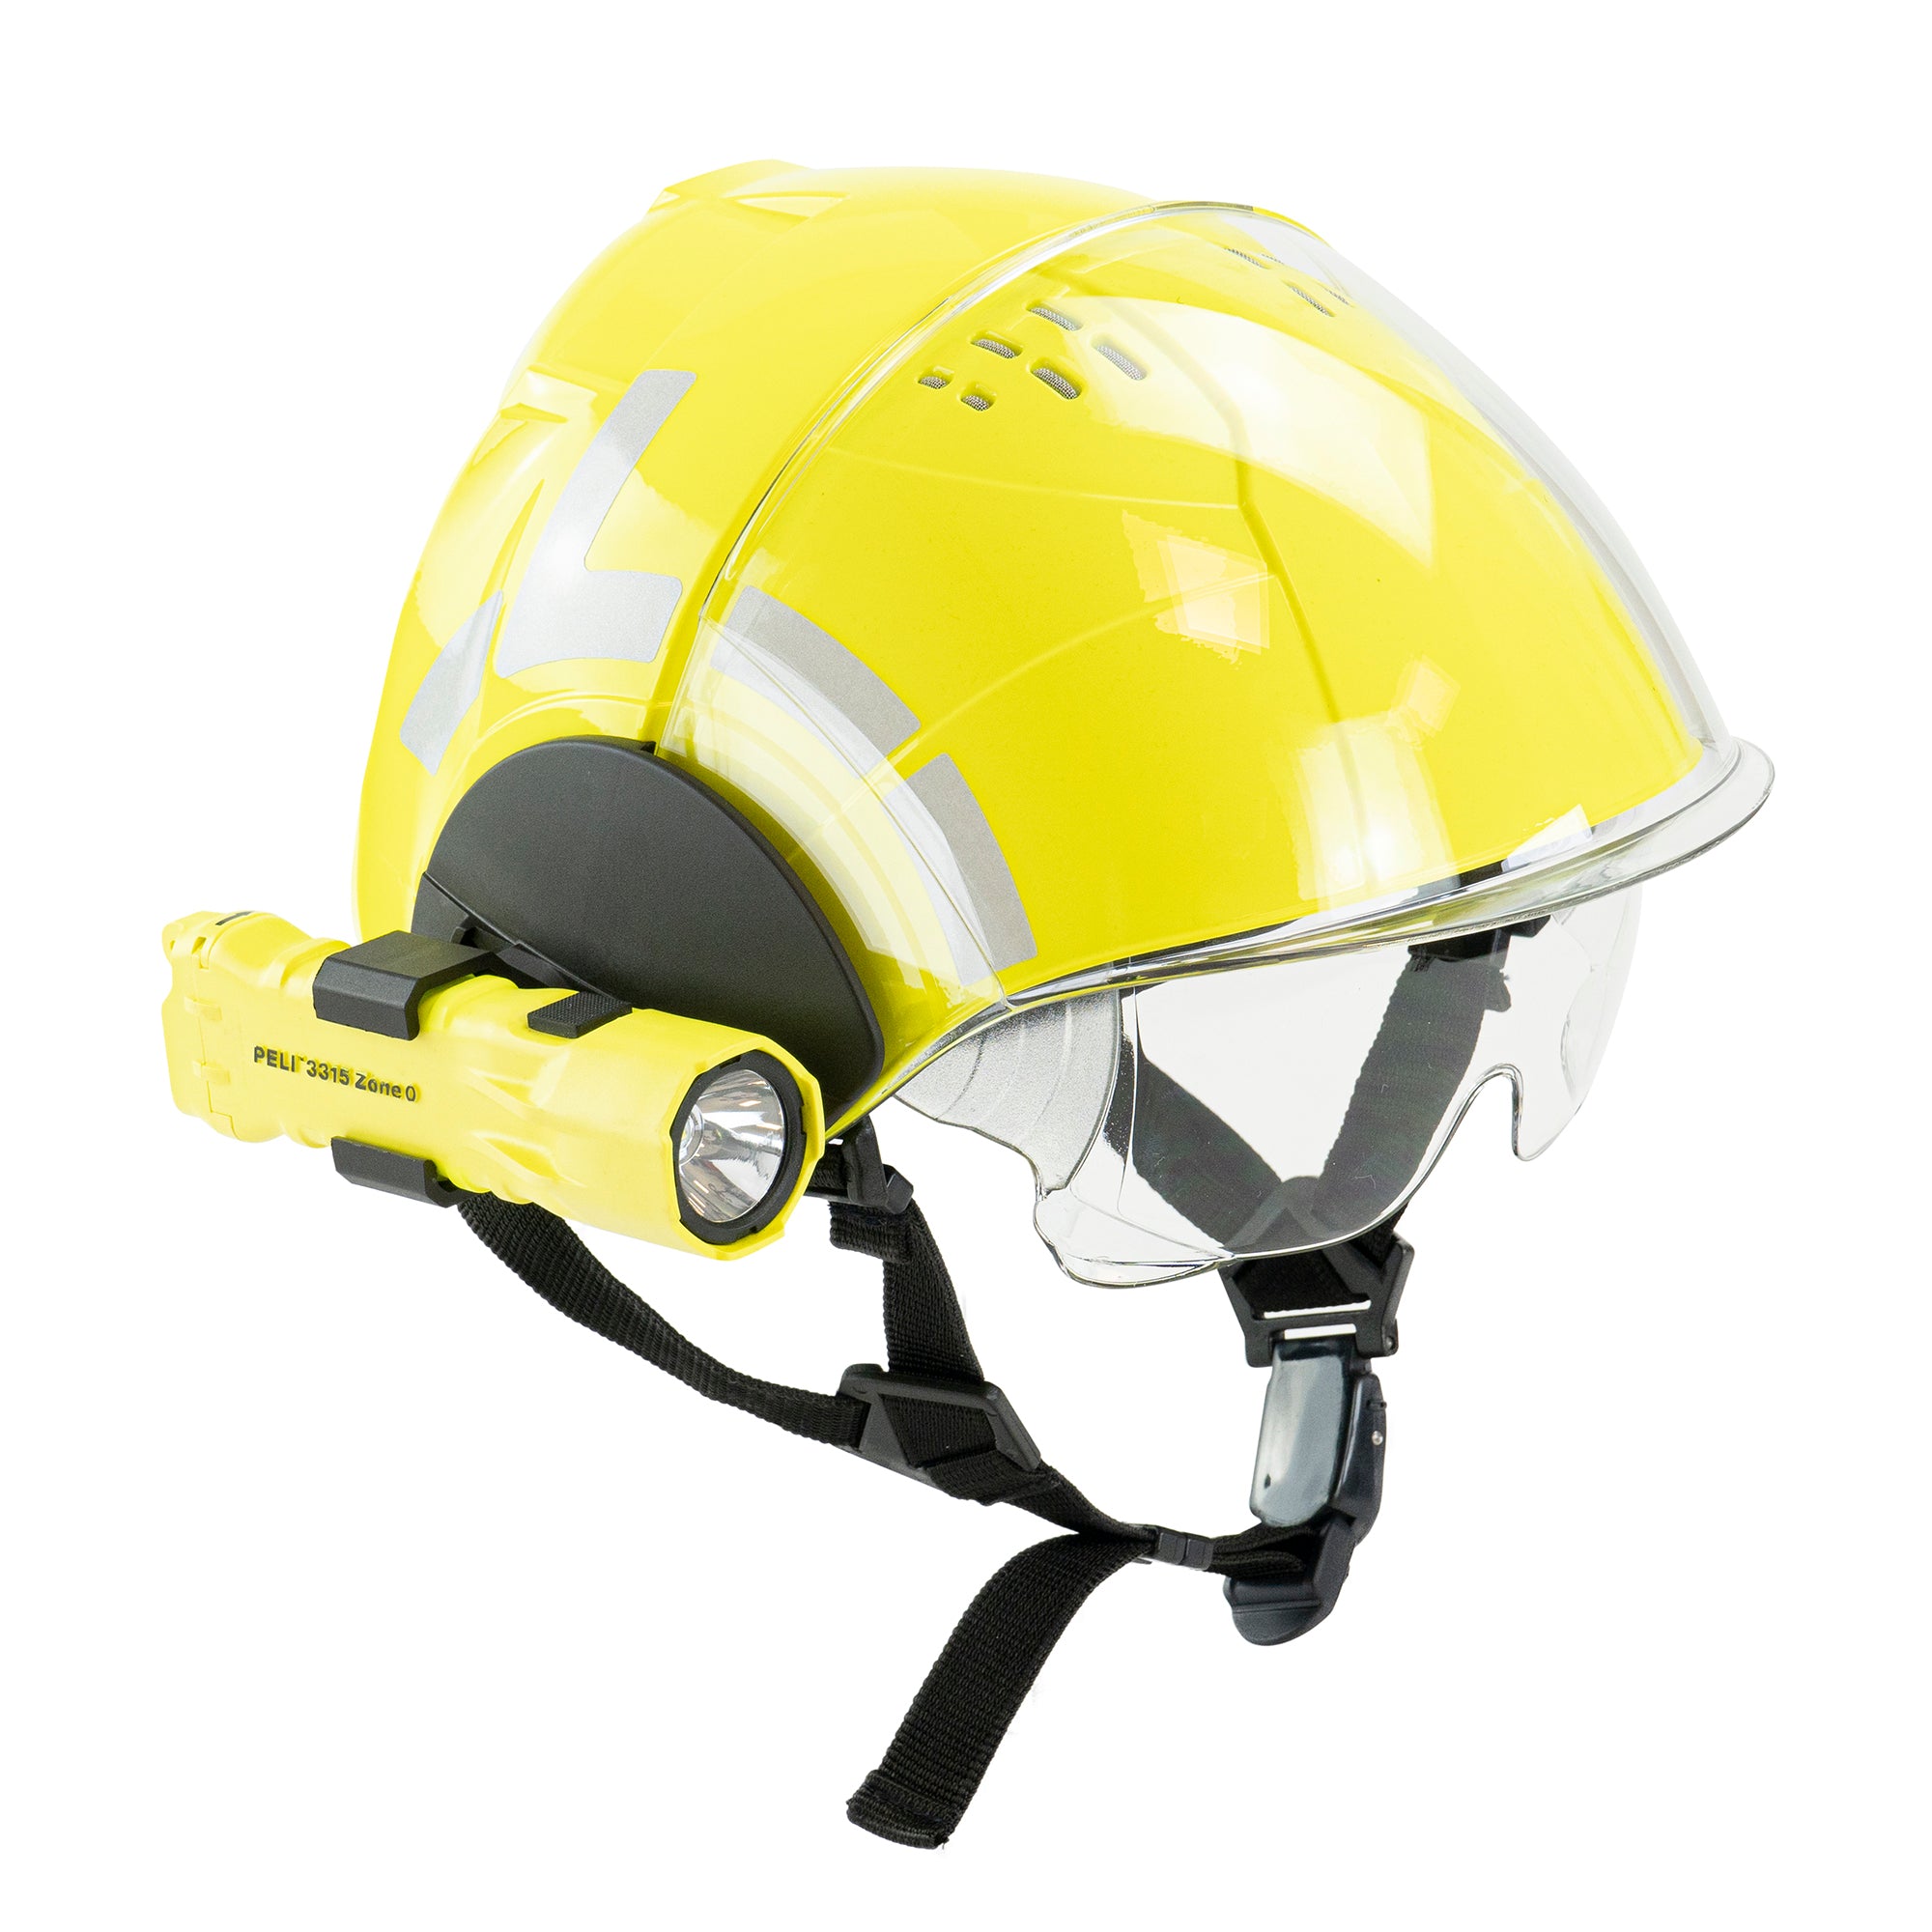 WRS - Technical rescue helmet – WRS International